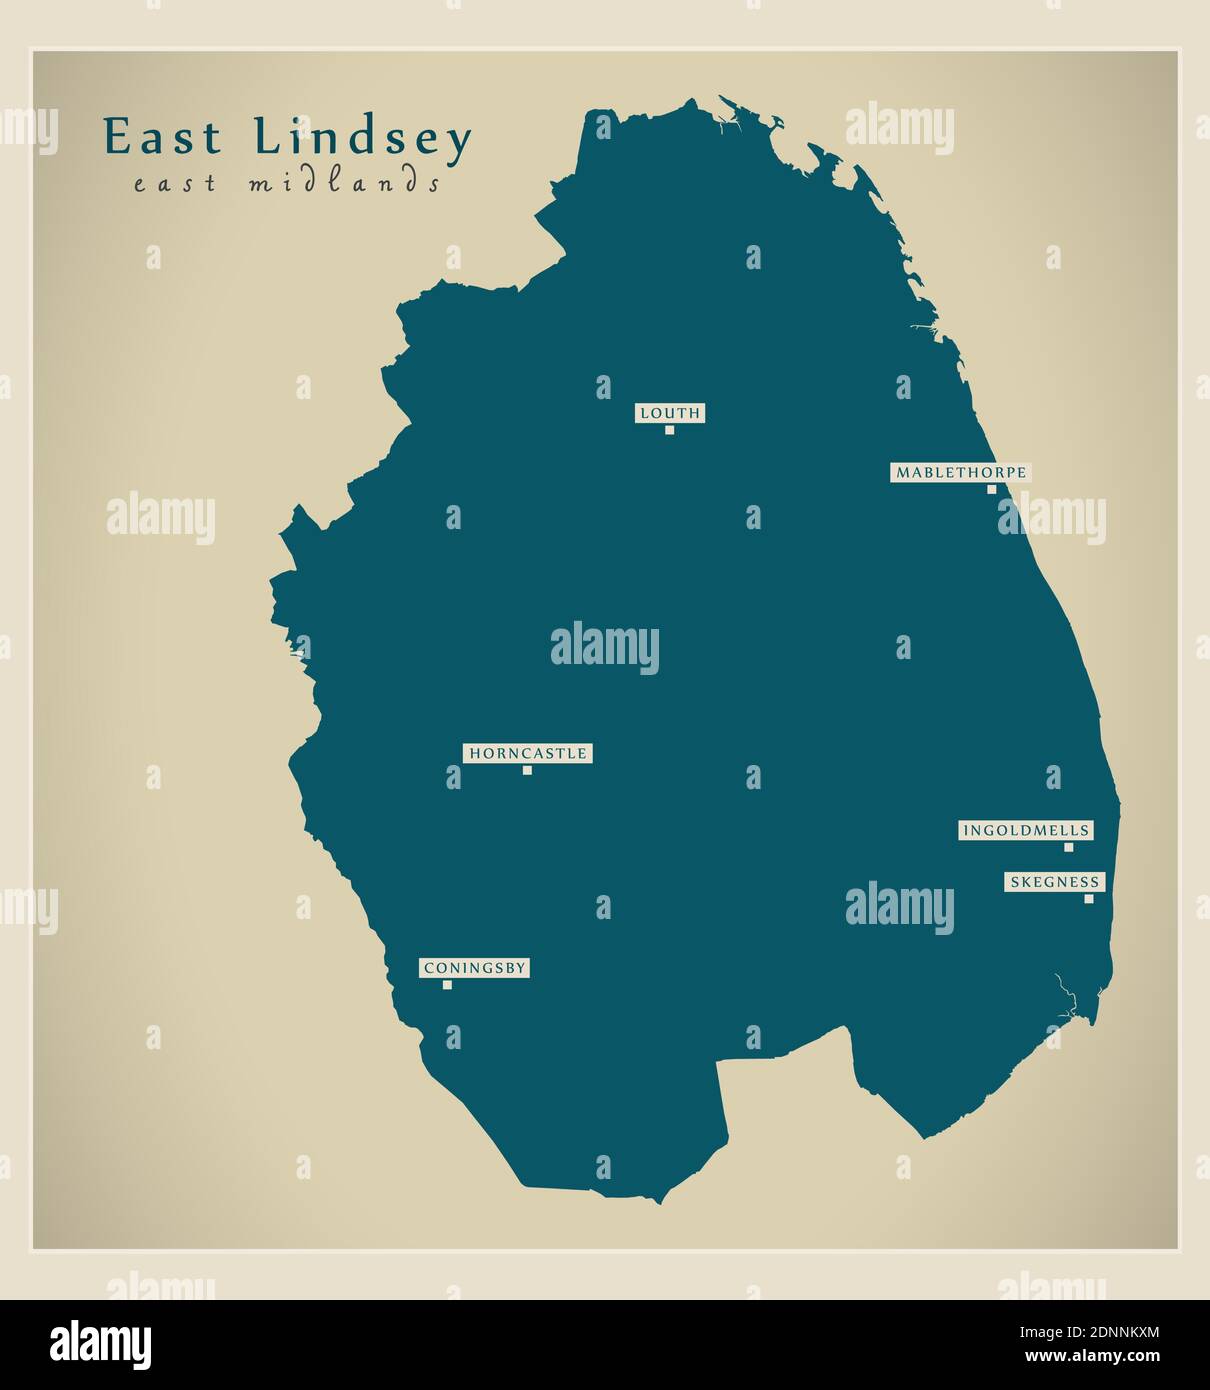 Mappa del distretto di East Lindsey - Inghilterra Regno Unito Illustrazione Vettoriale